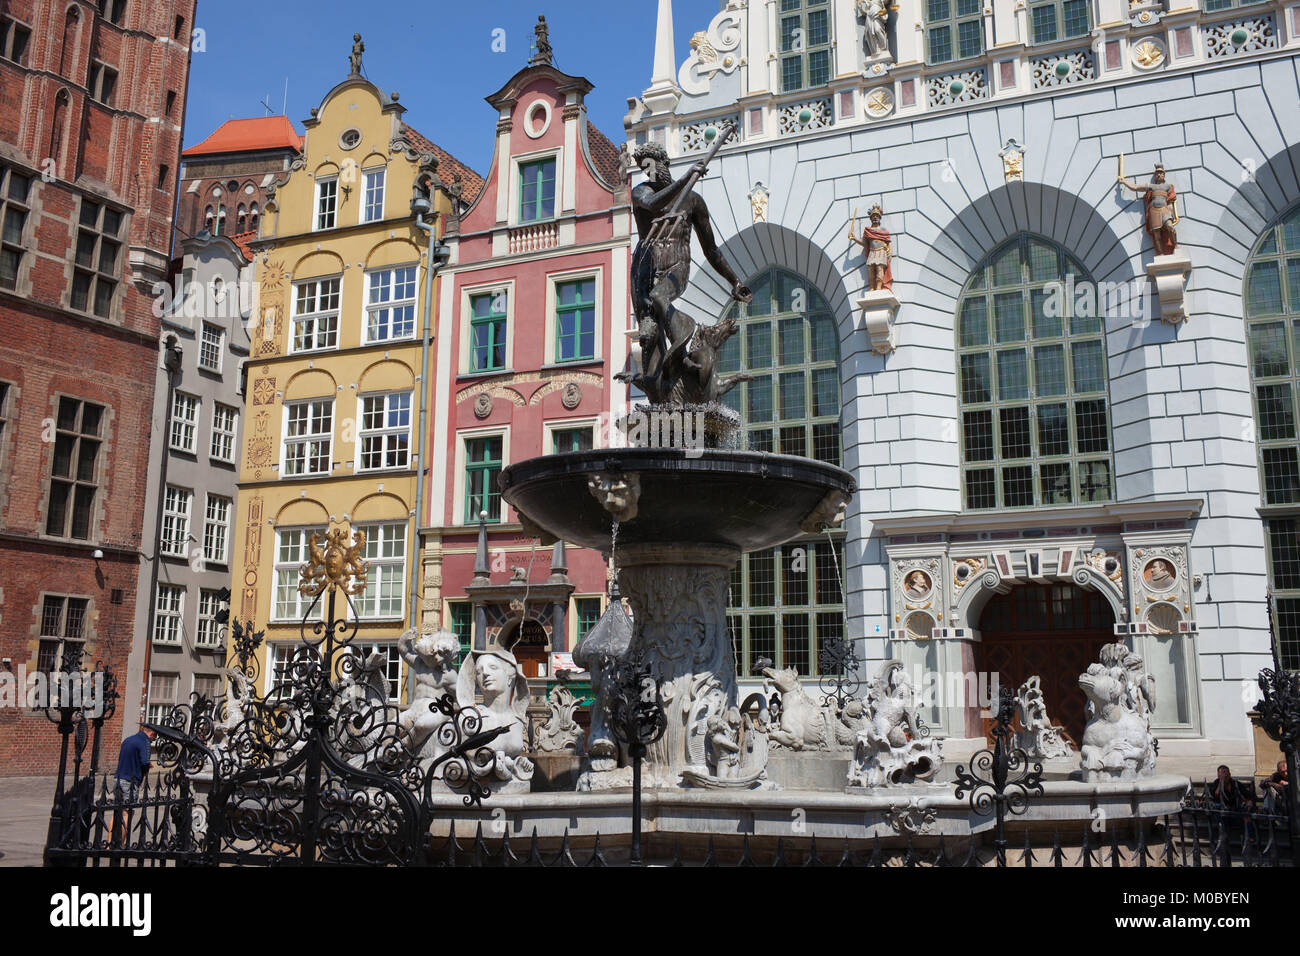 Fontana di Nettuno di fronte Artus Court e case storiche con timpano nel centro storico della città di Danzica, Polonia, Europa Foto Stock